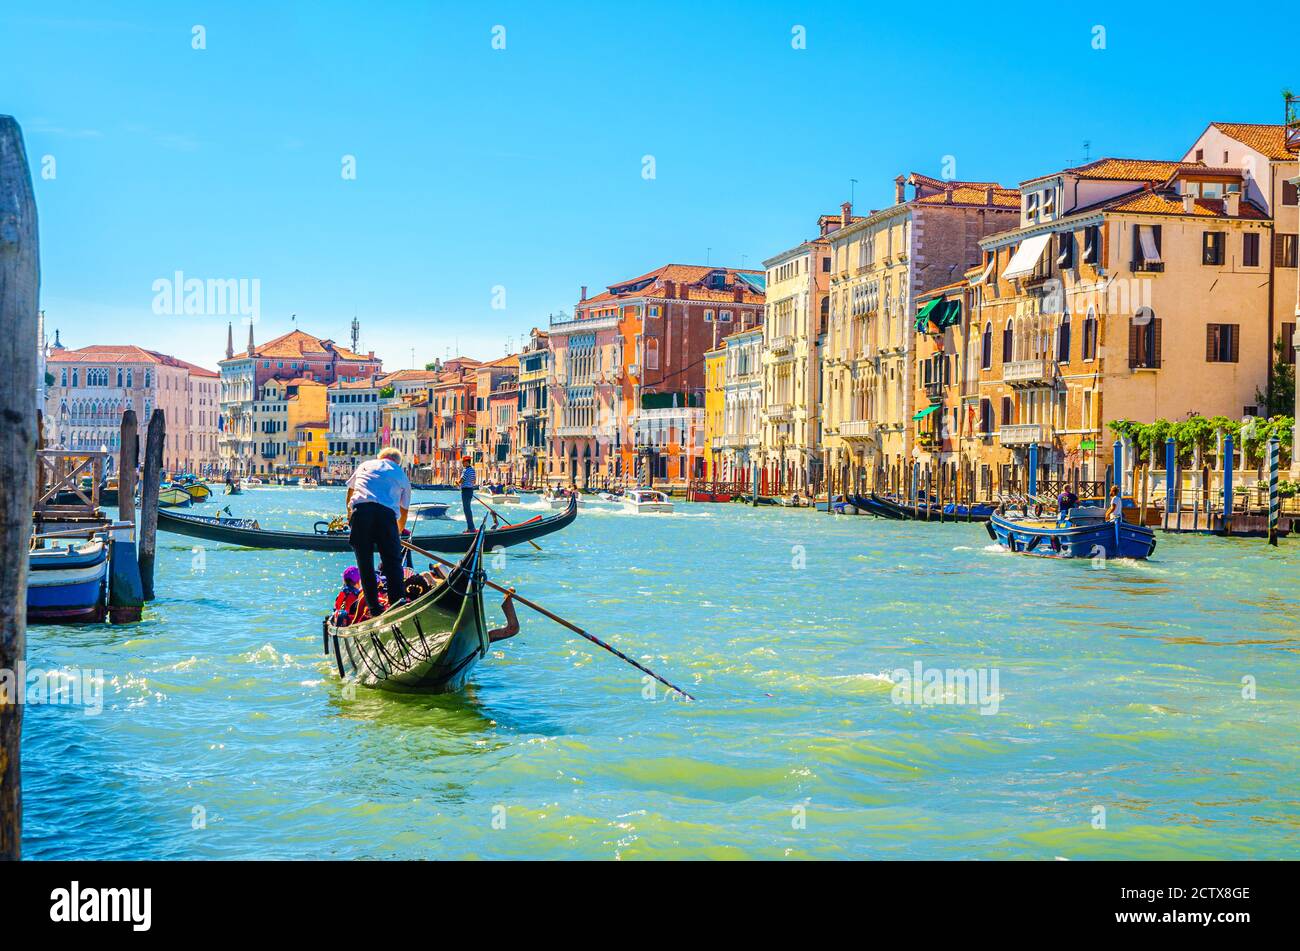 Venezia, Italia, 13 settembre 2019: Gondoliere e turisti in gondola tradizionale barca a vela sulle acque del Canal Grande con architettura veneziana tipici edifici colorati sfondo Foto Stock